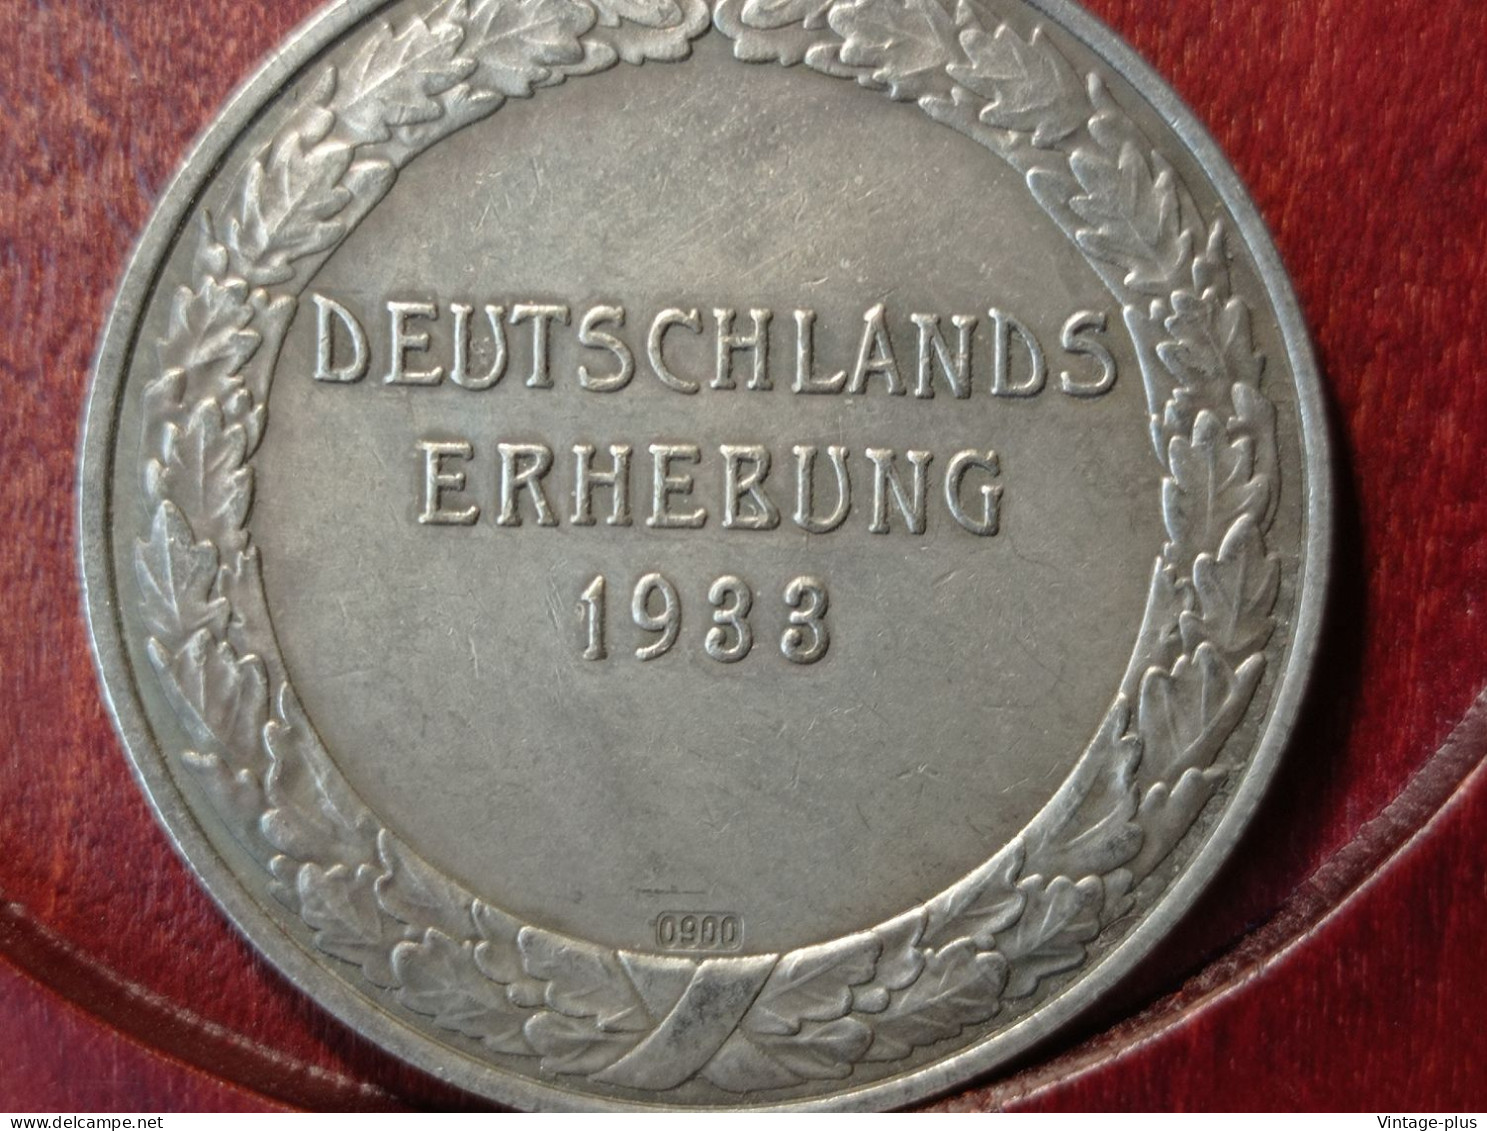 GERMANIA 3° REICH MONETA COMMEMORATIVA DEUTSCHLANDS ERHEBUNG1933 HITLER HINDENBURG  - ALLEMAGNE - DEUTSCHLAND - COD:AB8 - Sonstige – Europa